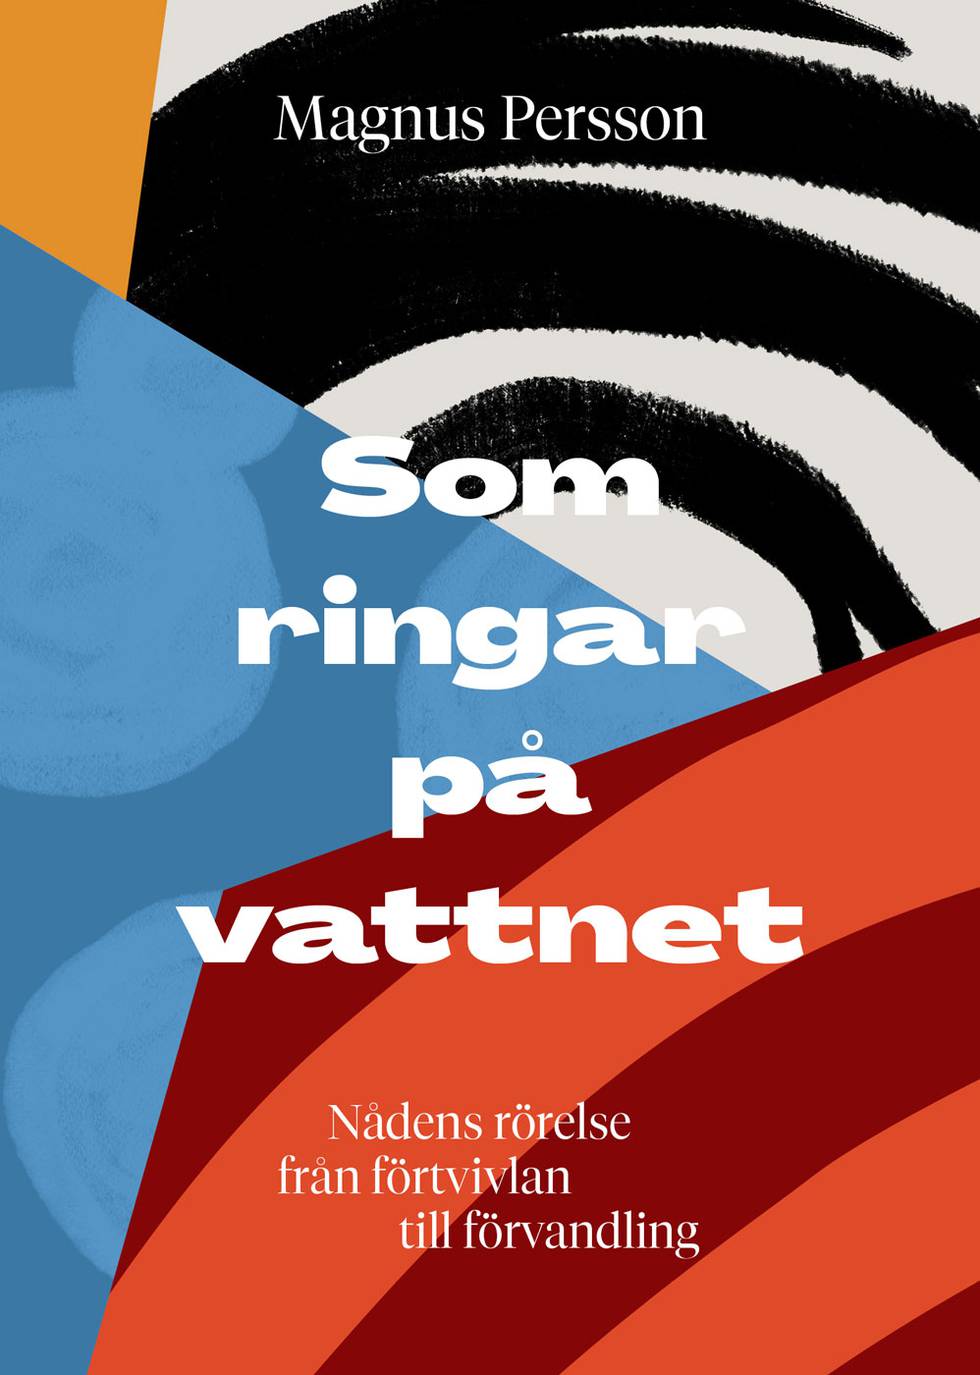 Omslag "Som ringar på vattnet" av Magnus Persson.